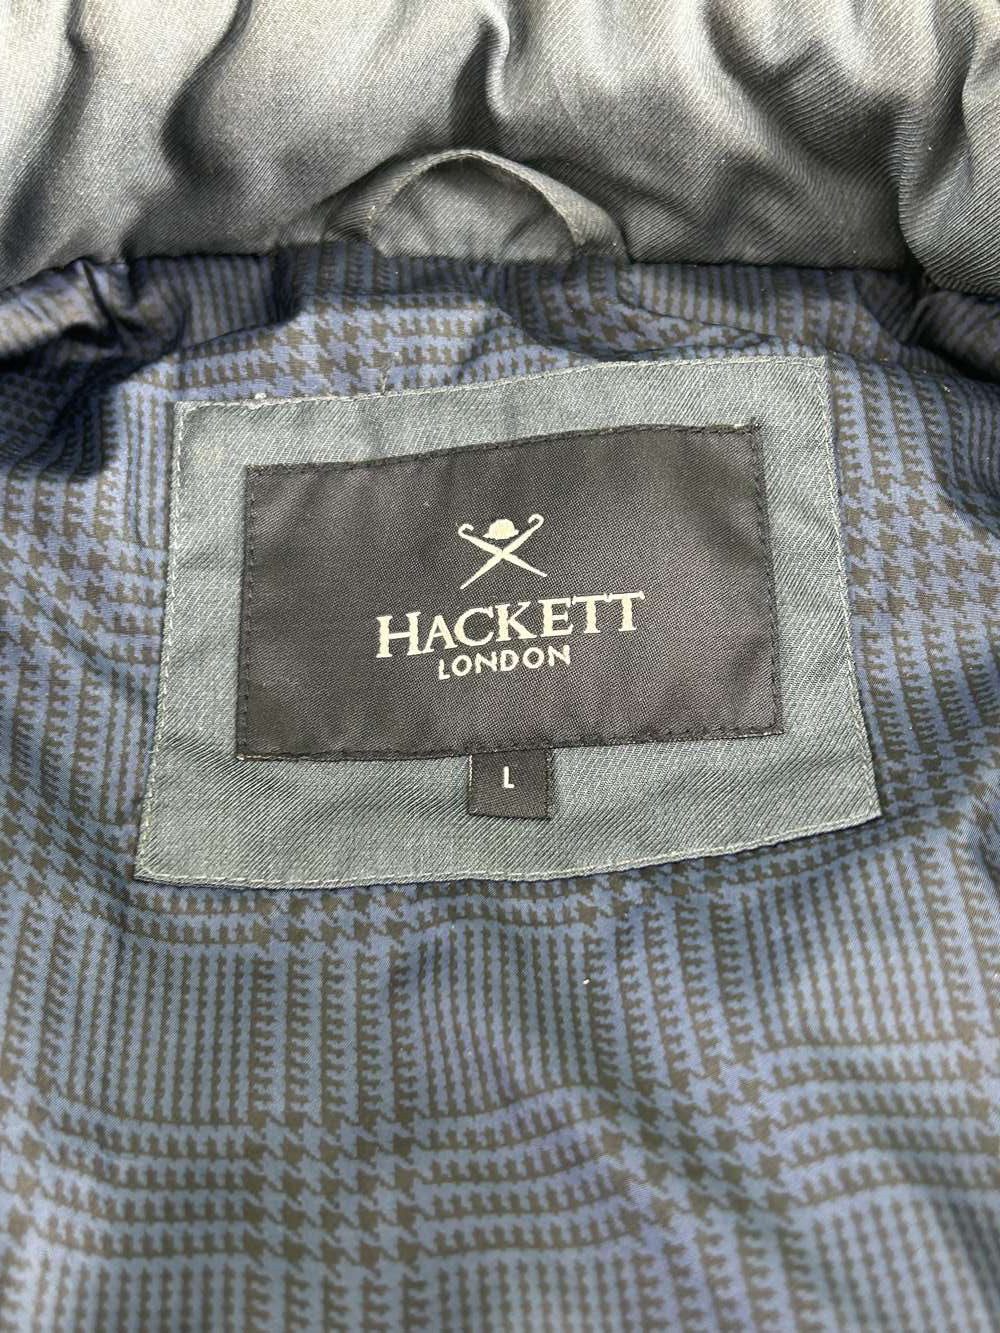 Hackett London Under Jacket/Blazer Navy Gillet - Image 8 of 9